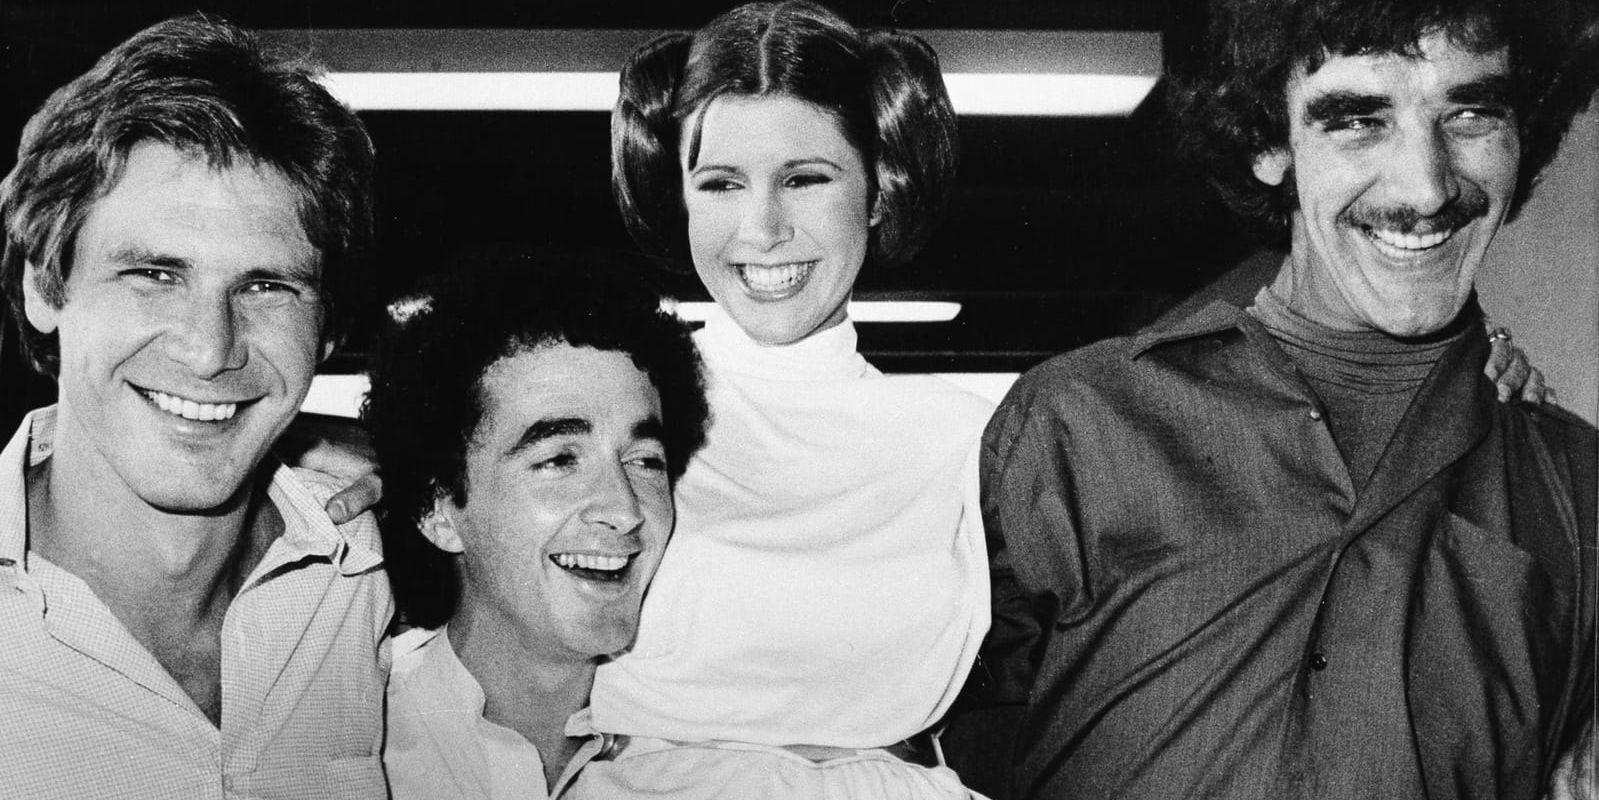 Peter Mayhew, längst till höger, tillsammans med Star wars-kollegorna Harrison Ford (Han Solo), Anthony Daniels (C-3PO) och Carrie Fisher (Leia) vid en tv-inspelning 1978.